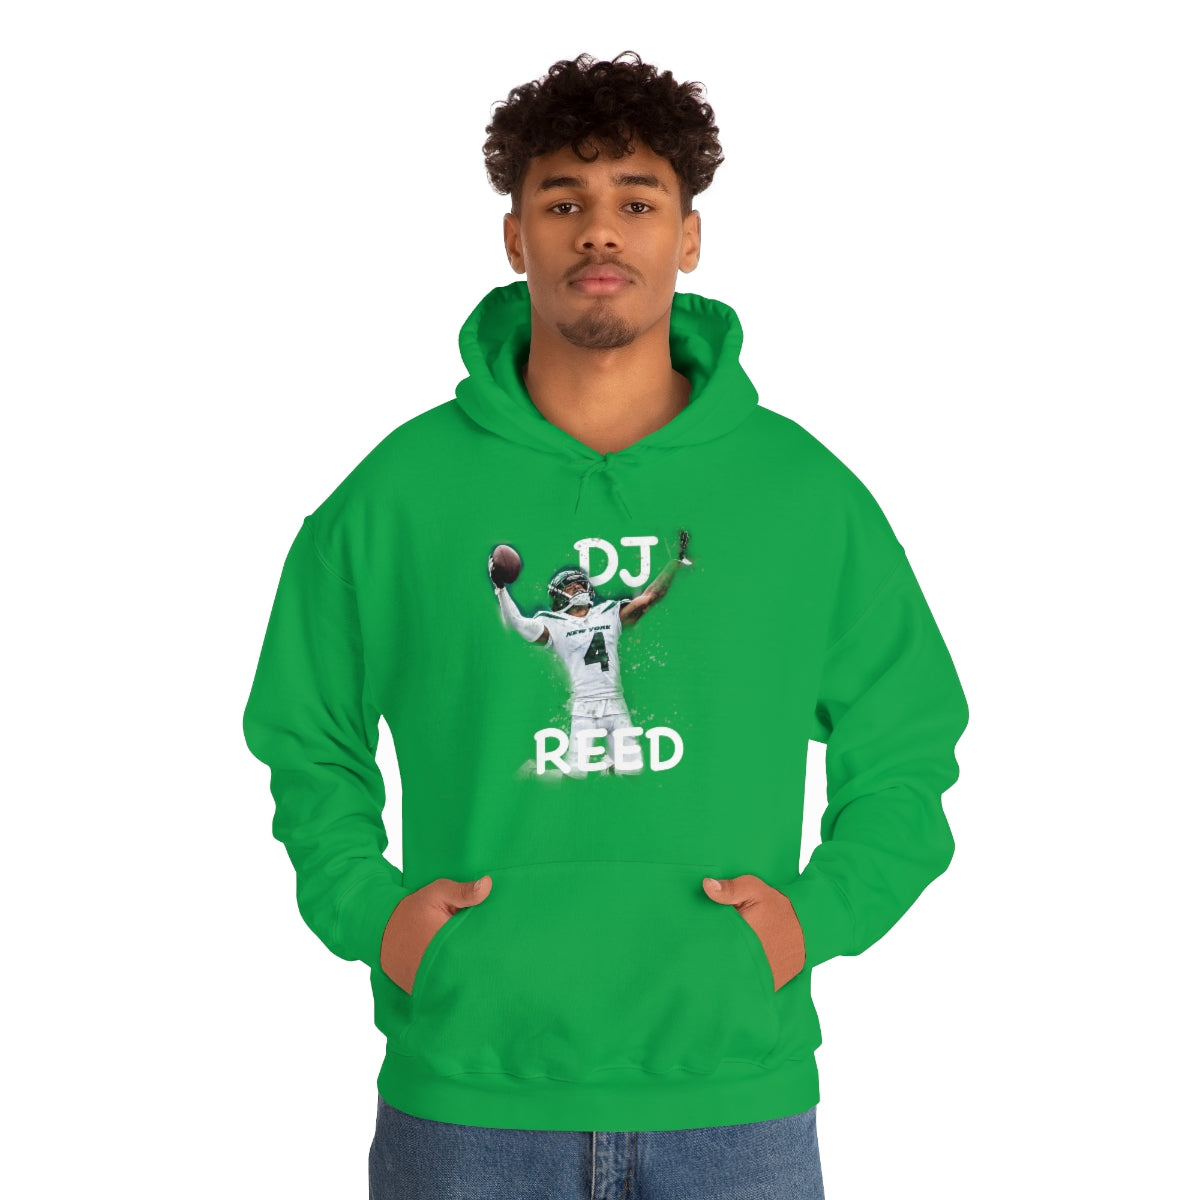 DJ REED Hooded Sweatshirt - IsGoodBrand